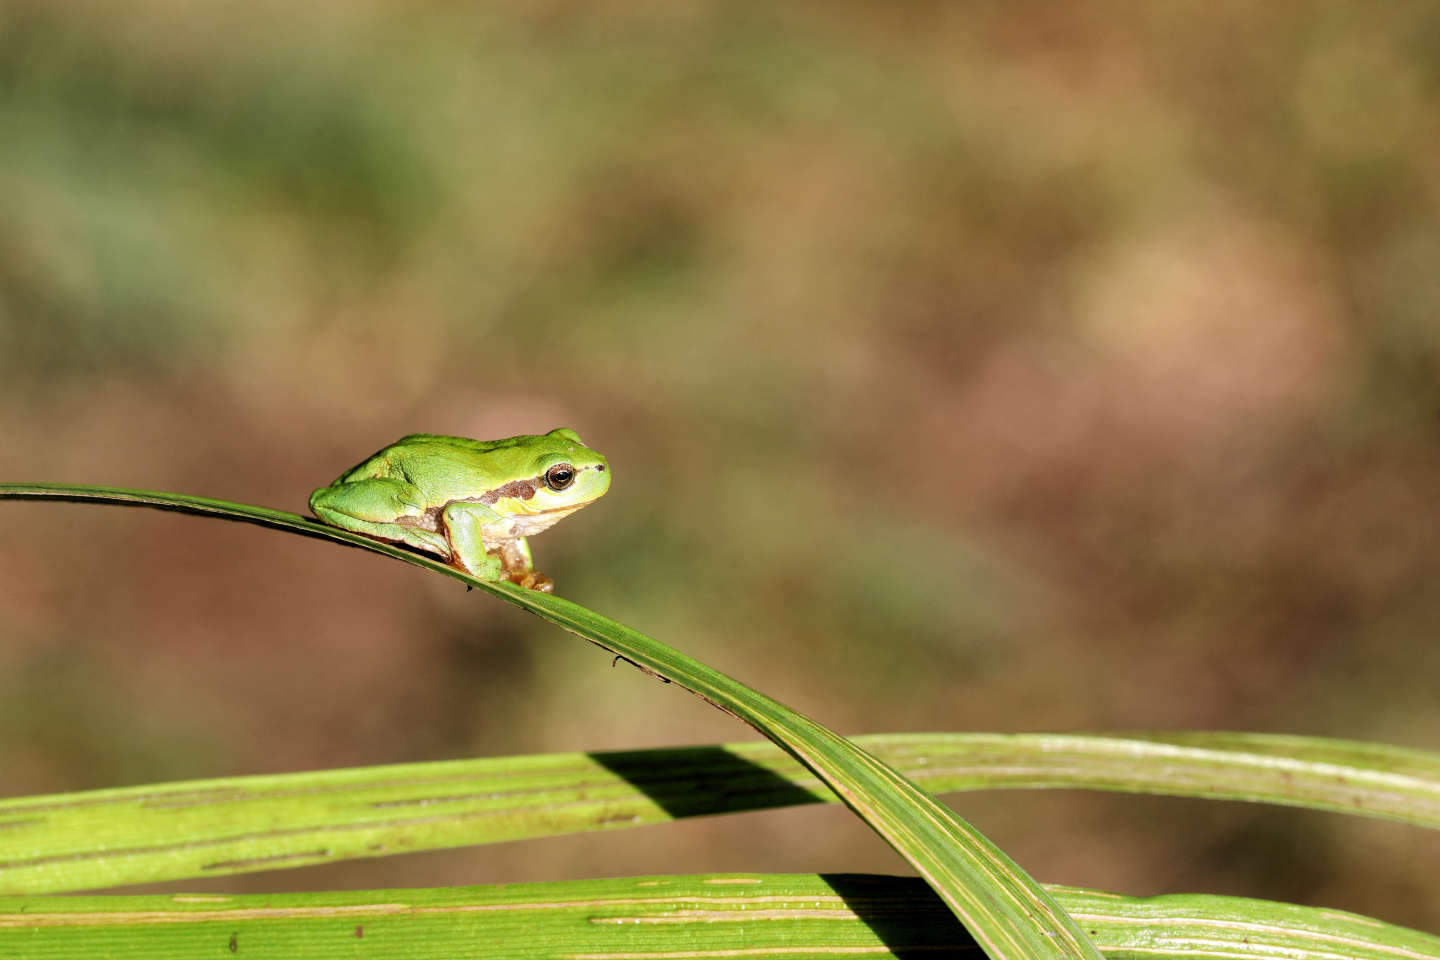 Tritons, rainettes, salamandres… en France, les amphibiens menacés par la sécheresse